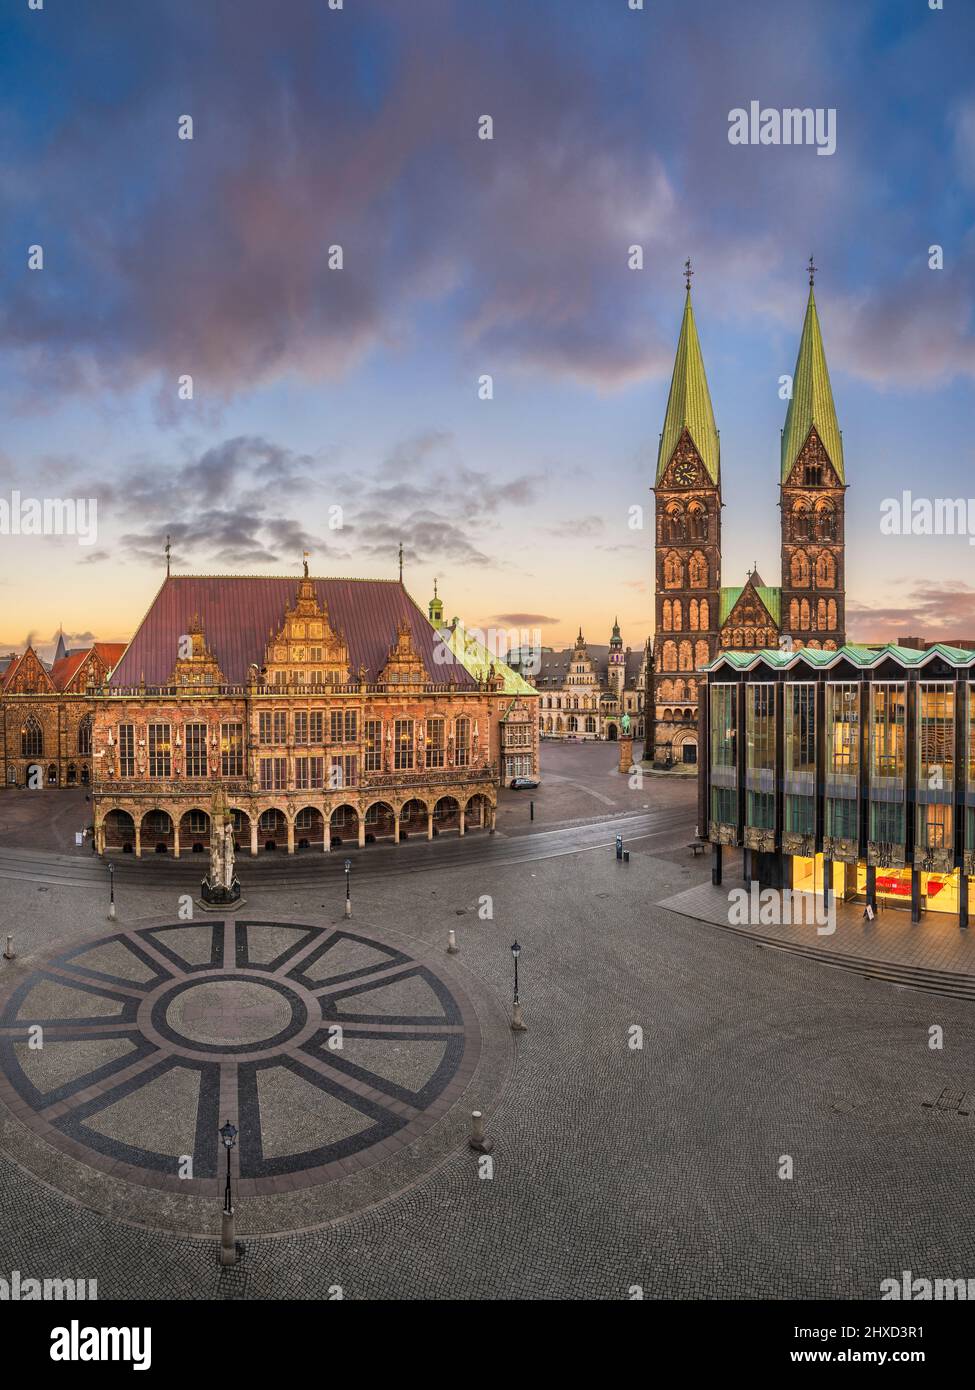 Market square in Bremen, Germany Stock Photo